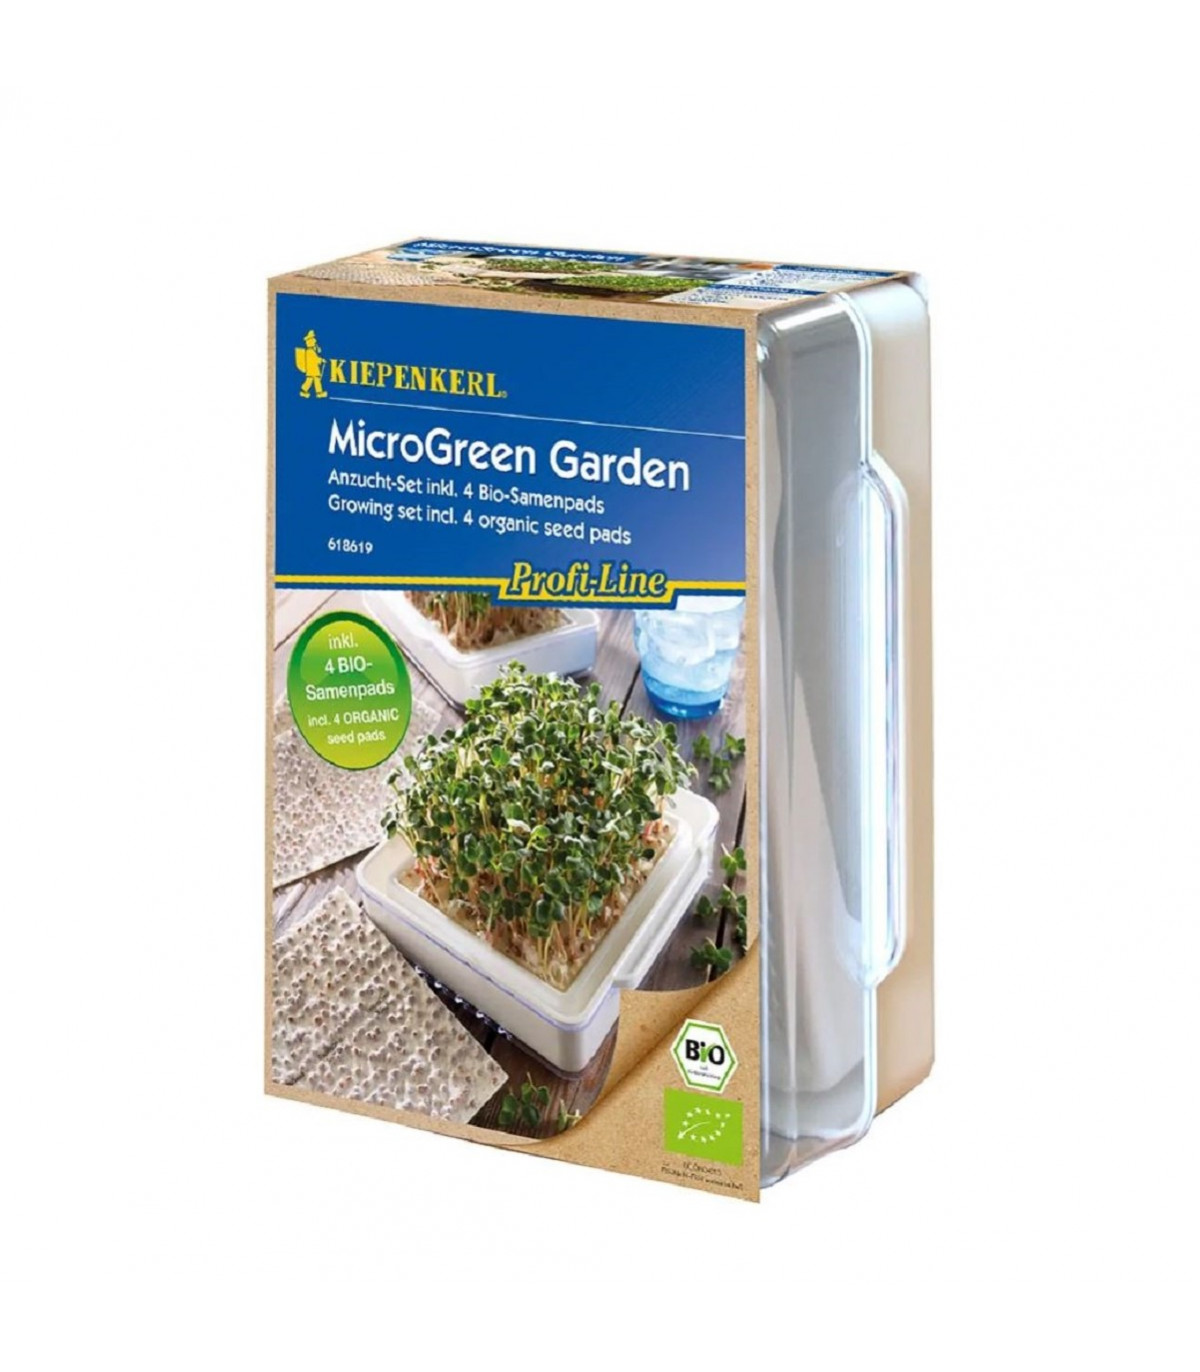 Microgreen garden - mikrozelenina - startovací sada včetně 4 plátů - 1 ks